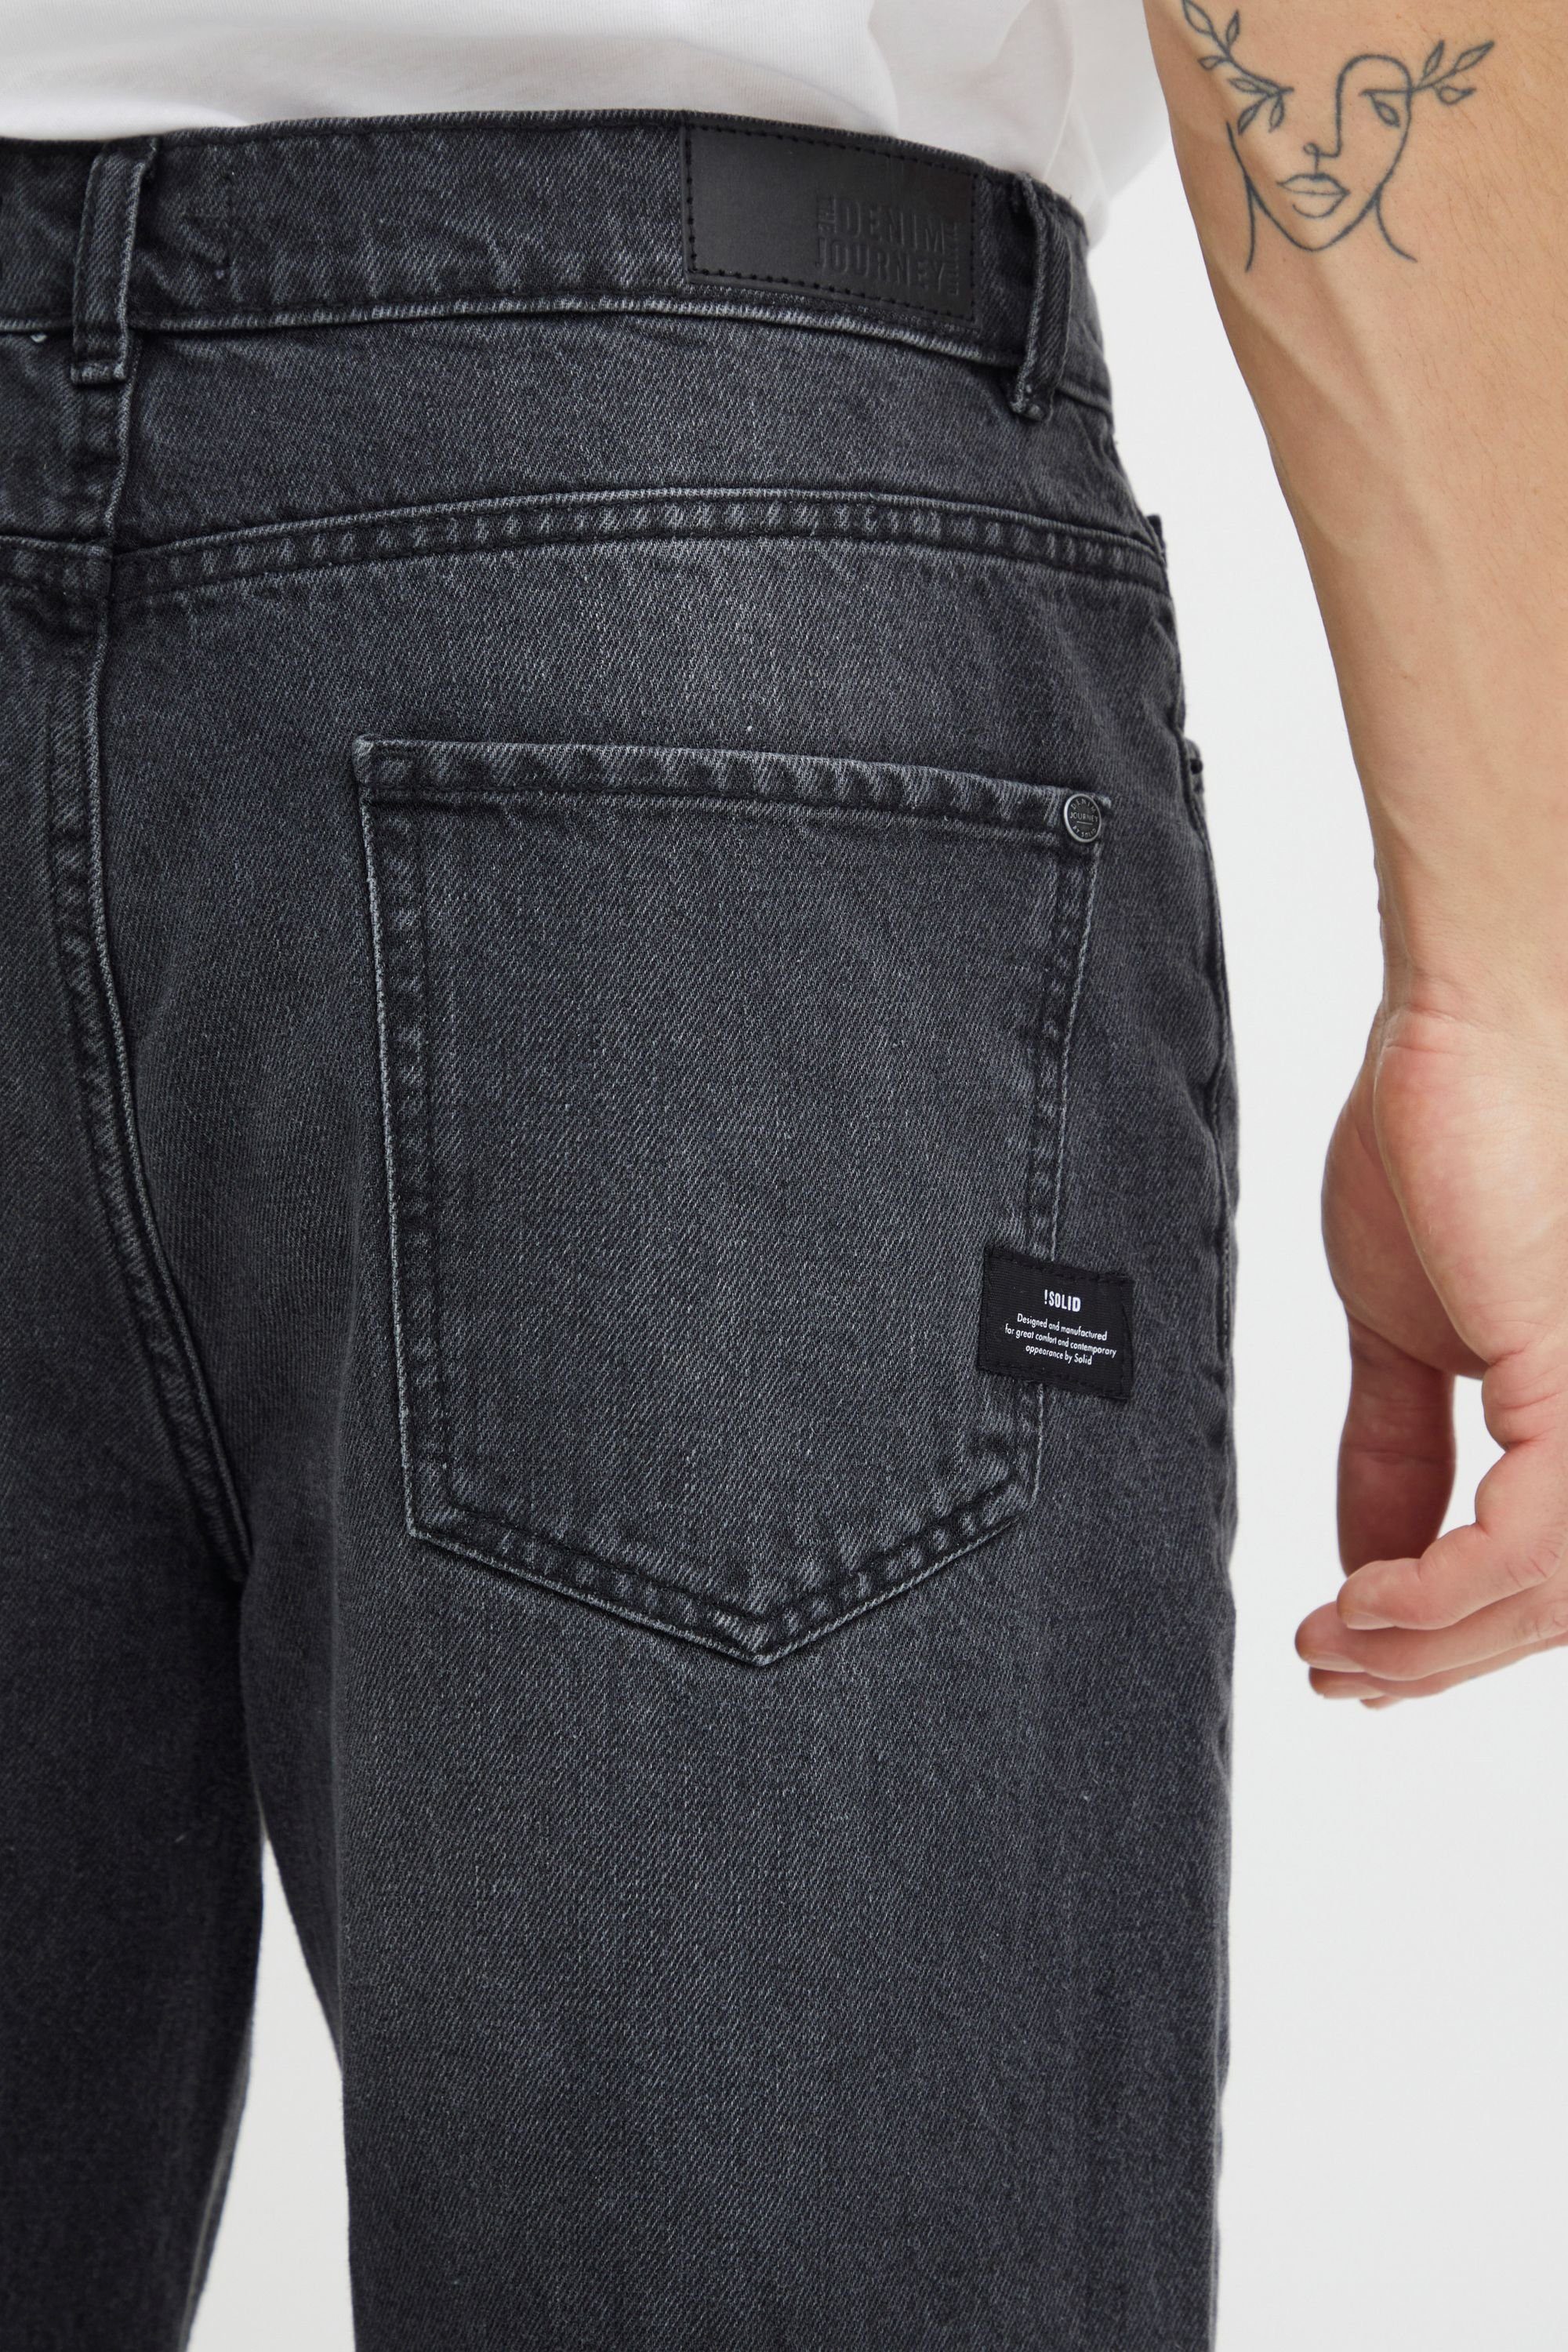 !Solid Black 5-Pocket-Jeans Denim Vintage (700036) SDBoaz